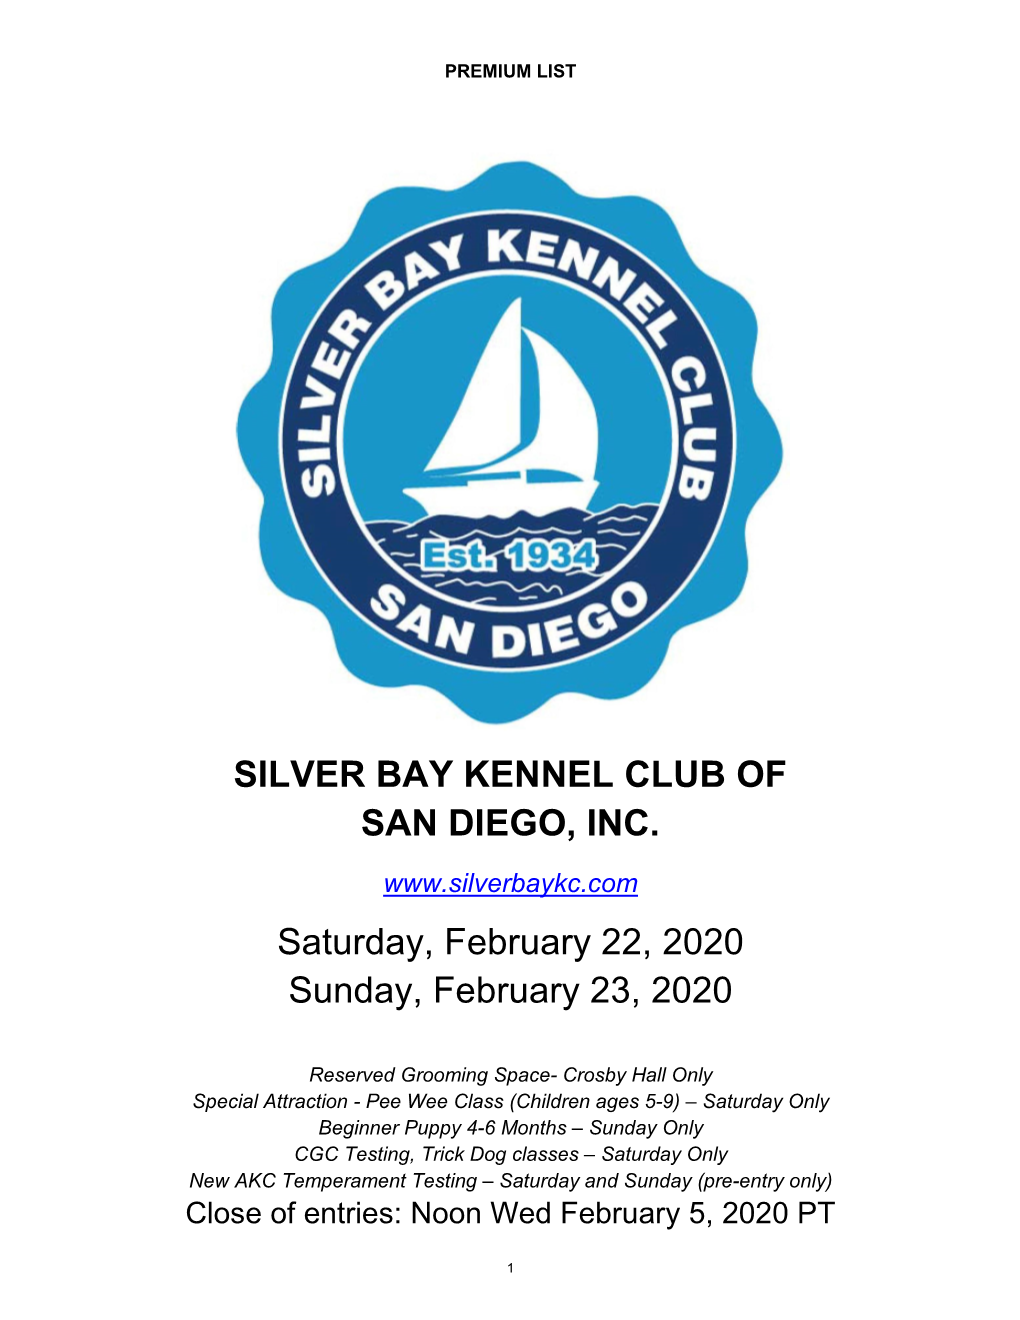 SILVER BAY KENNEL CLUB of SAN DIEGO, INC. Saturday, February 22, 2020 Sunday, February 23, 2020